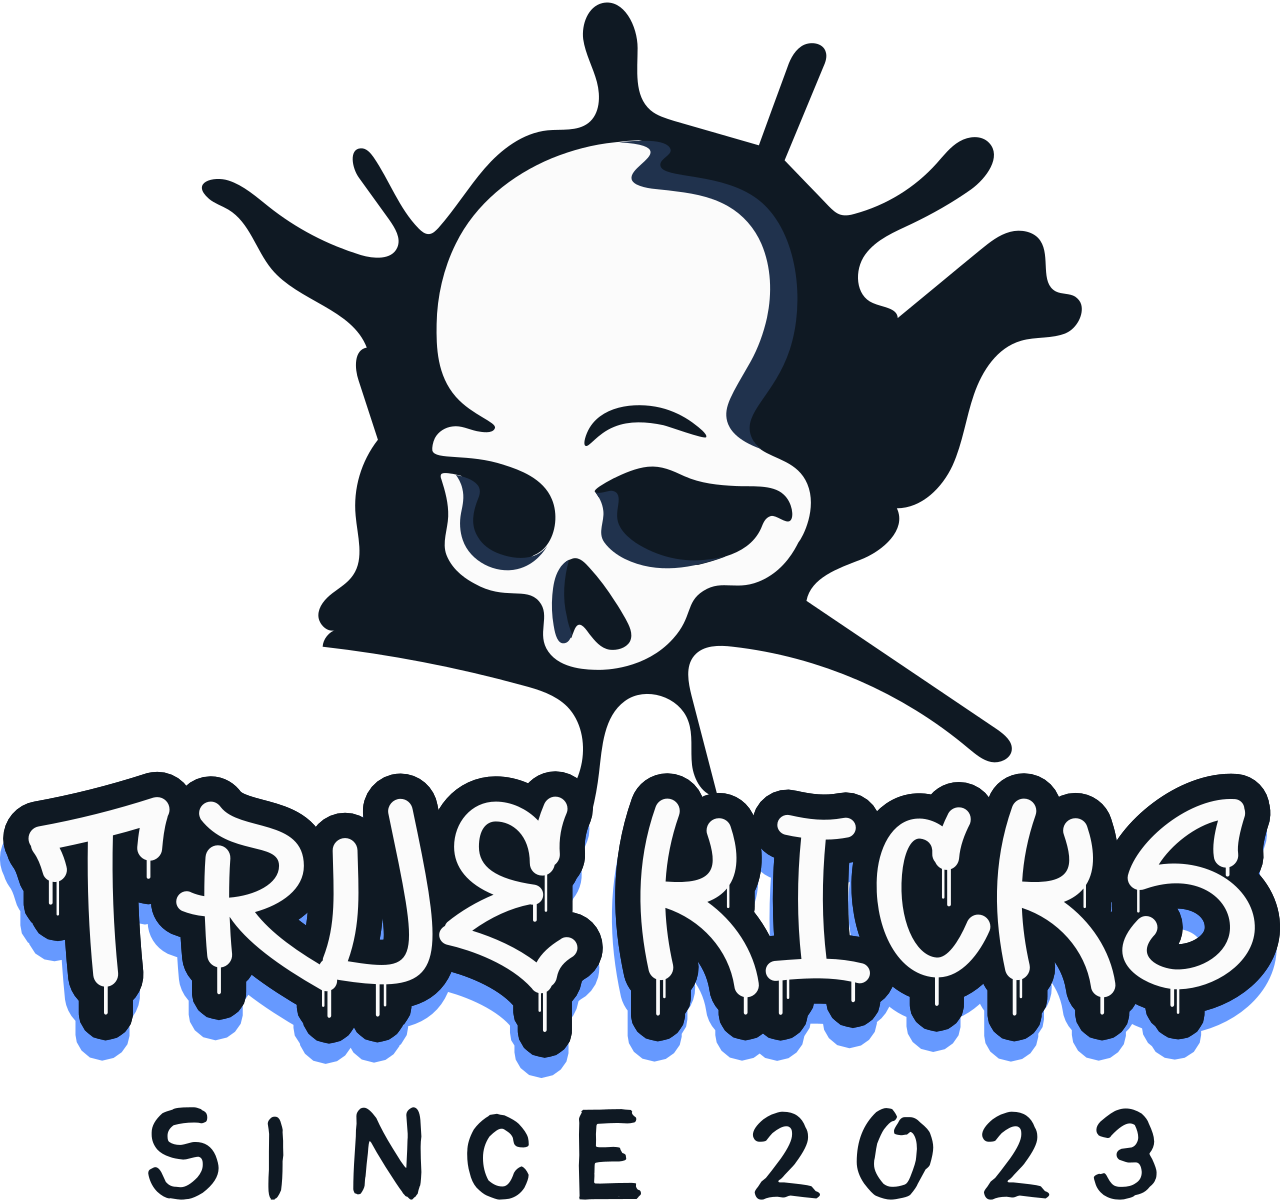 True kicks's logo